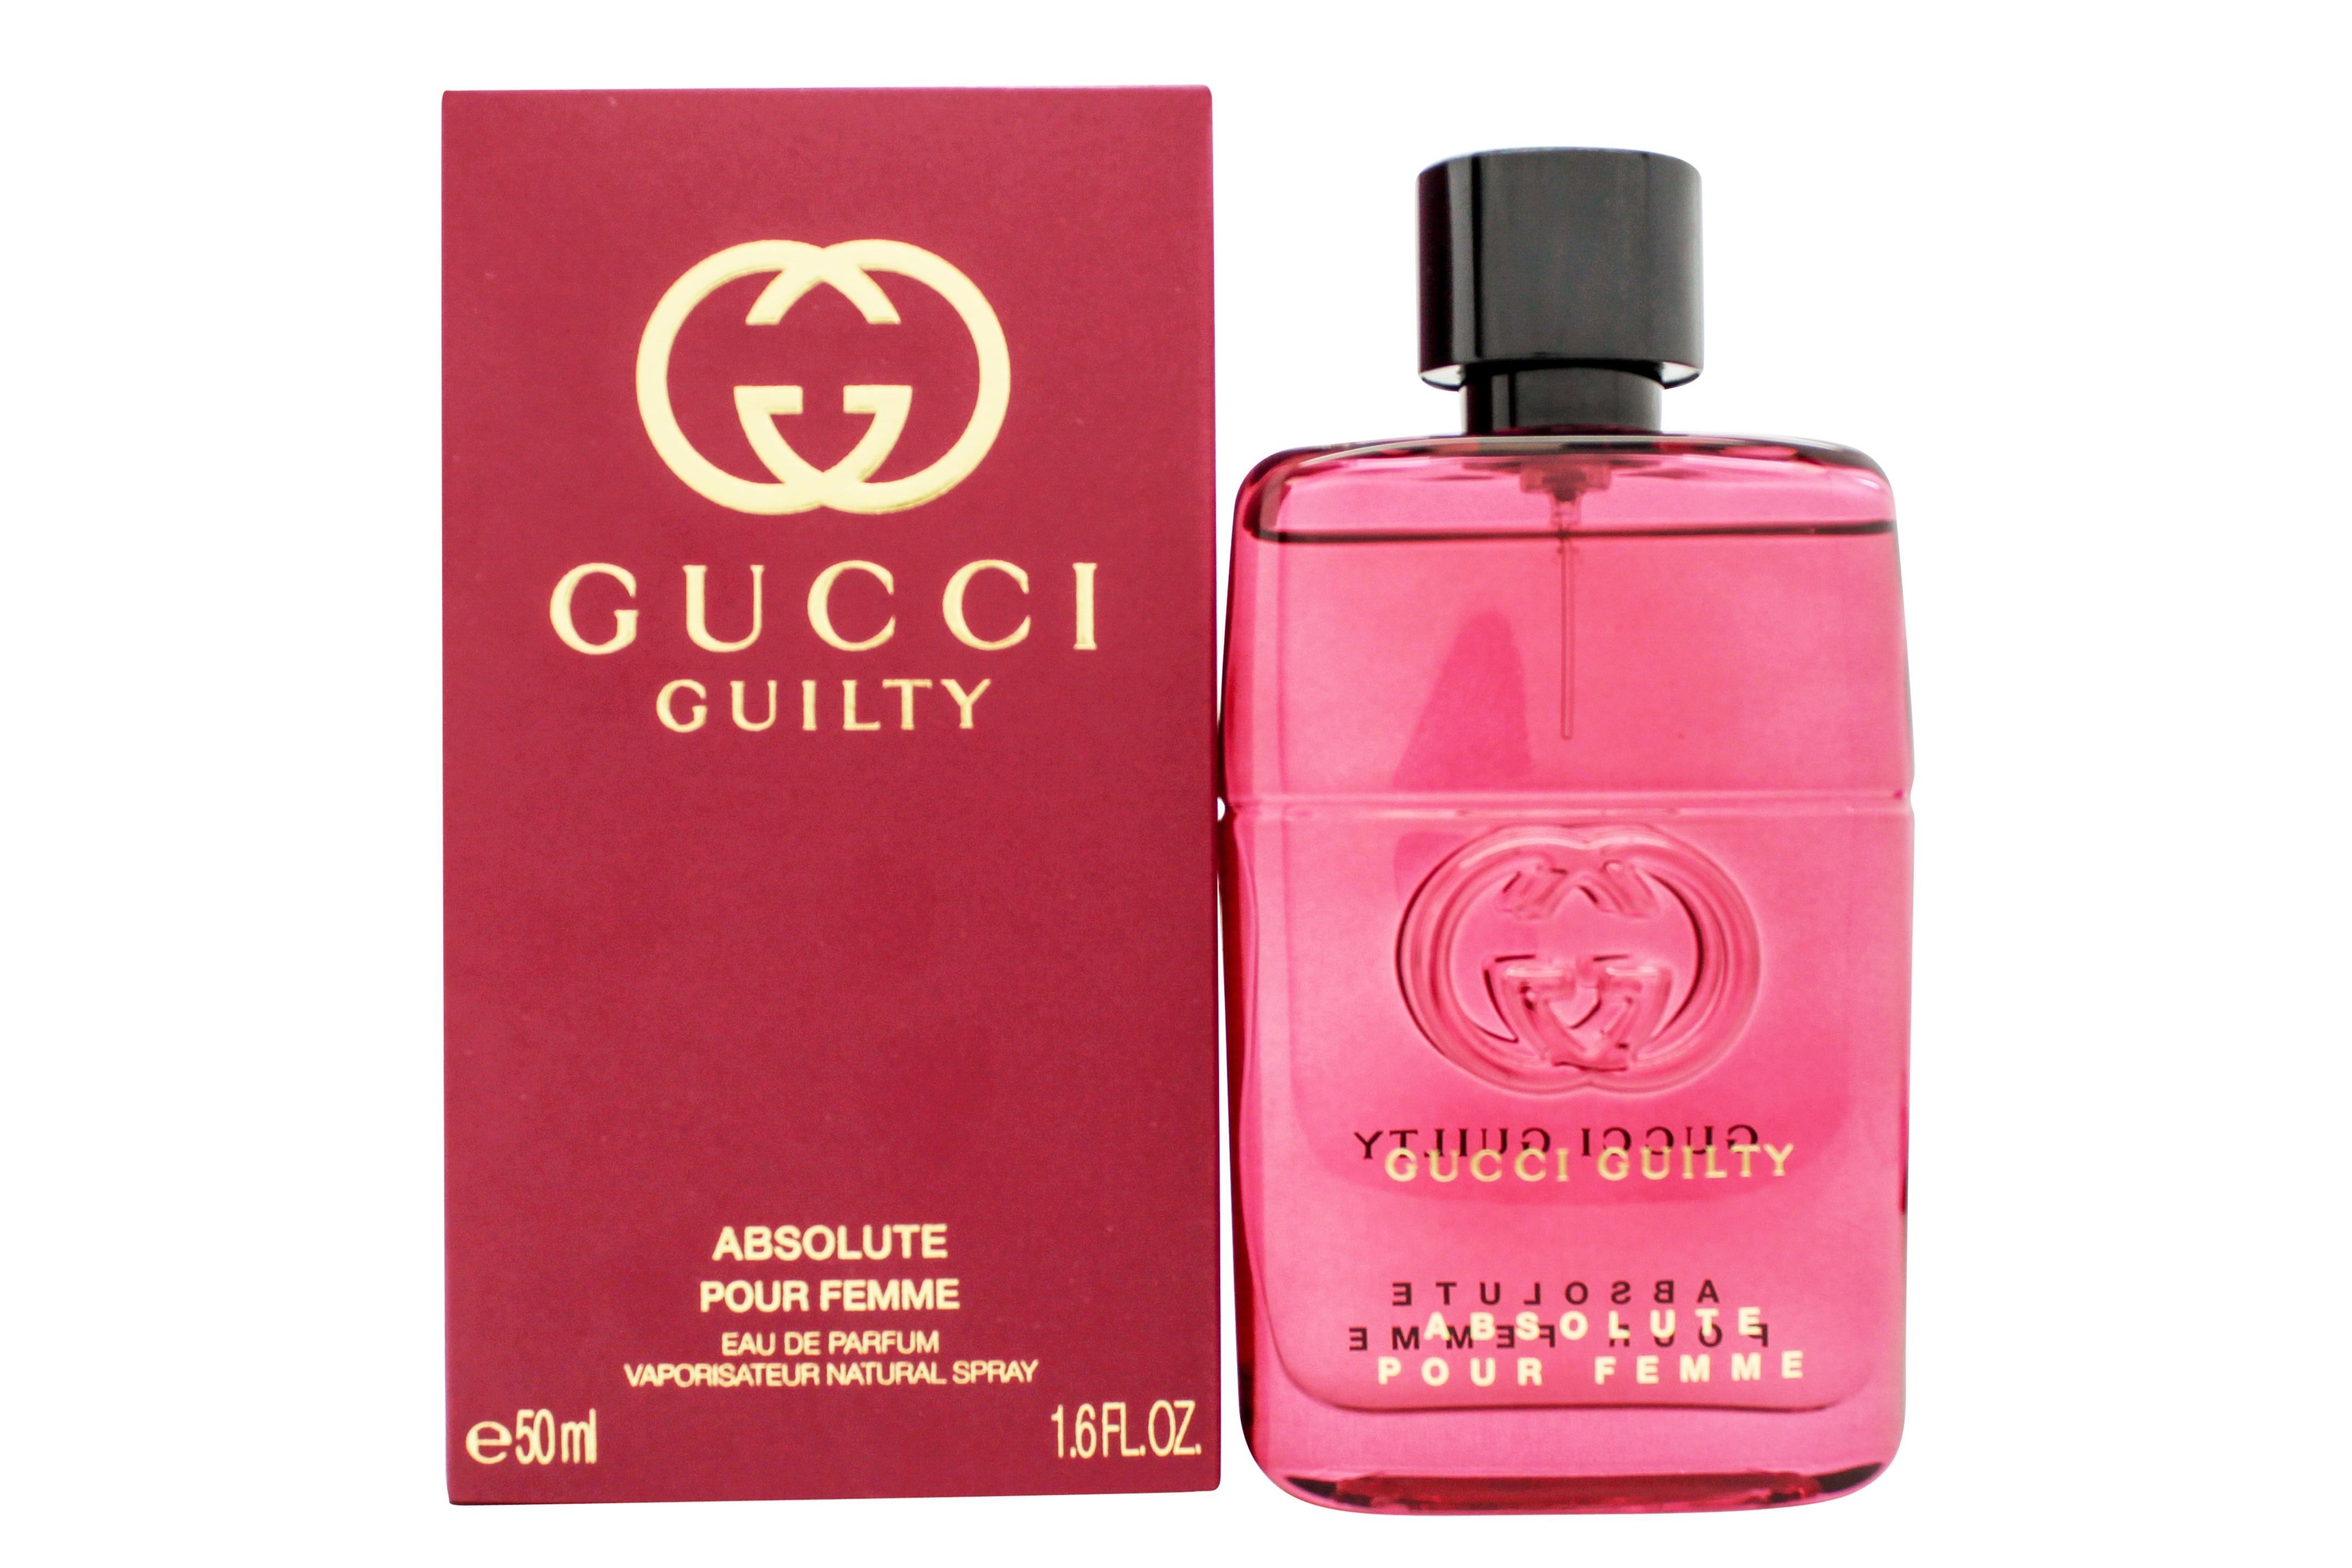 Gucci Guilty Absolute Pour Femme Eau de Parfum 50ml Spray